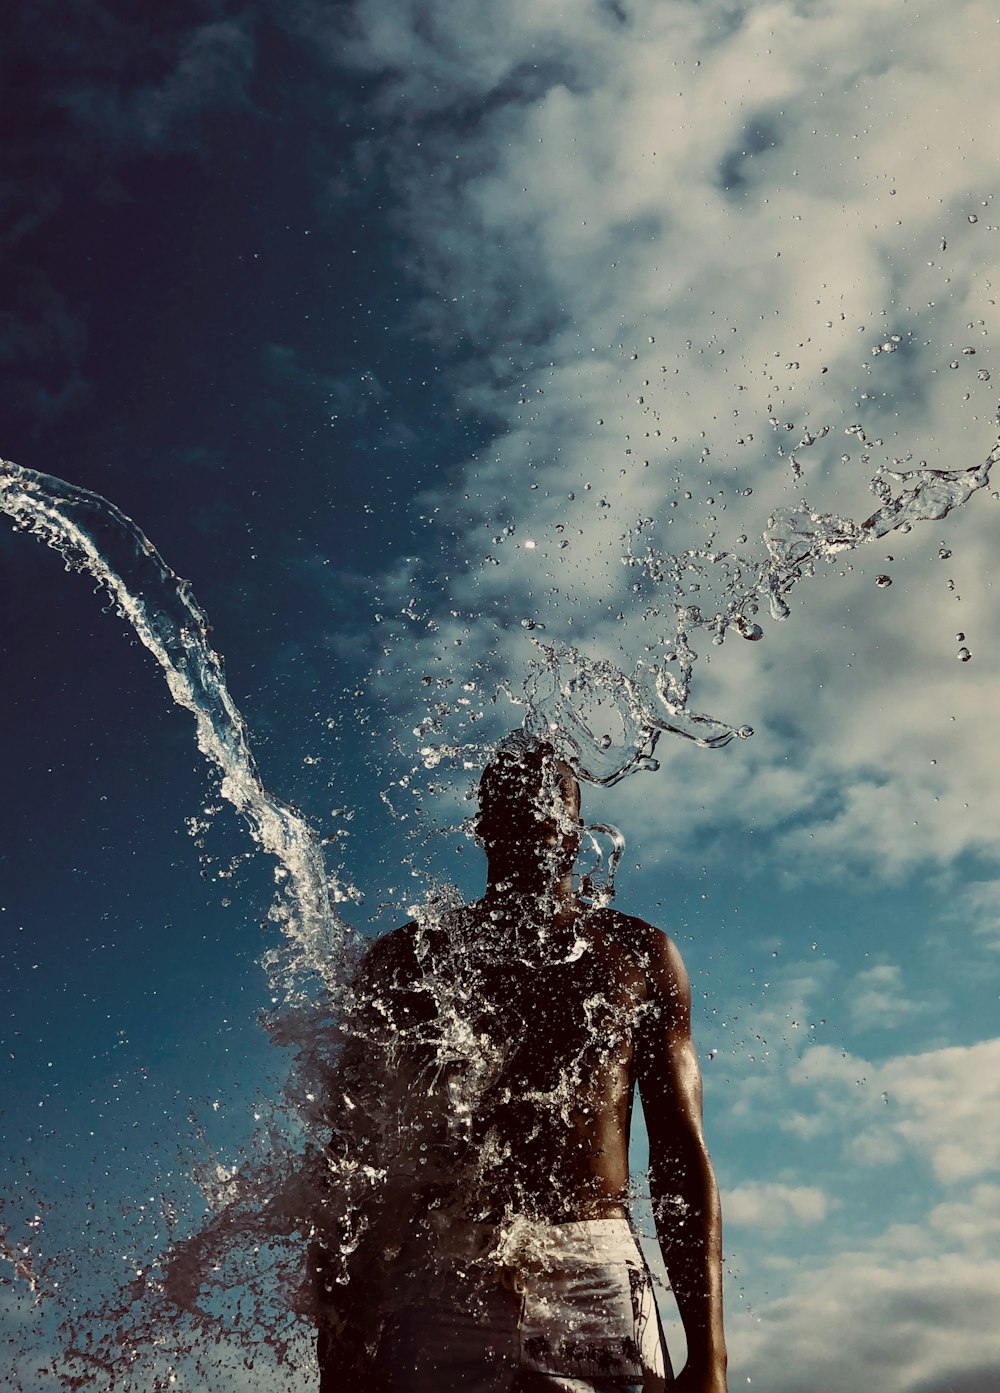 man splashing with water